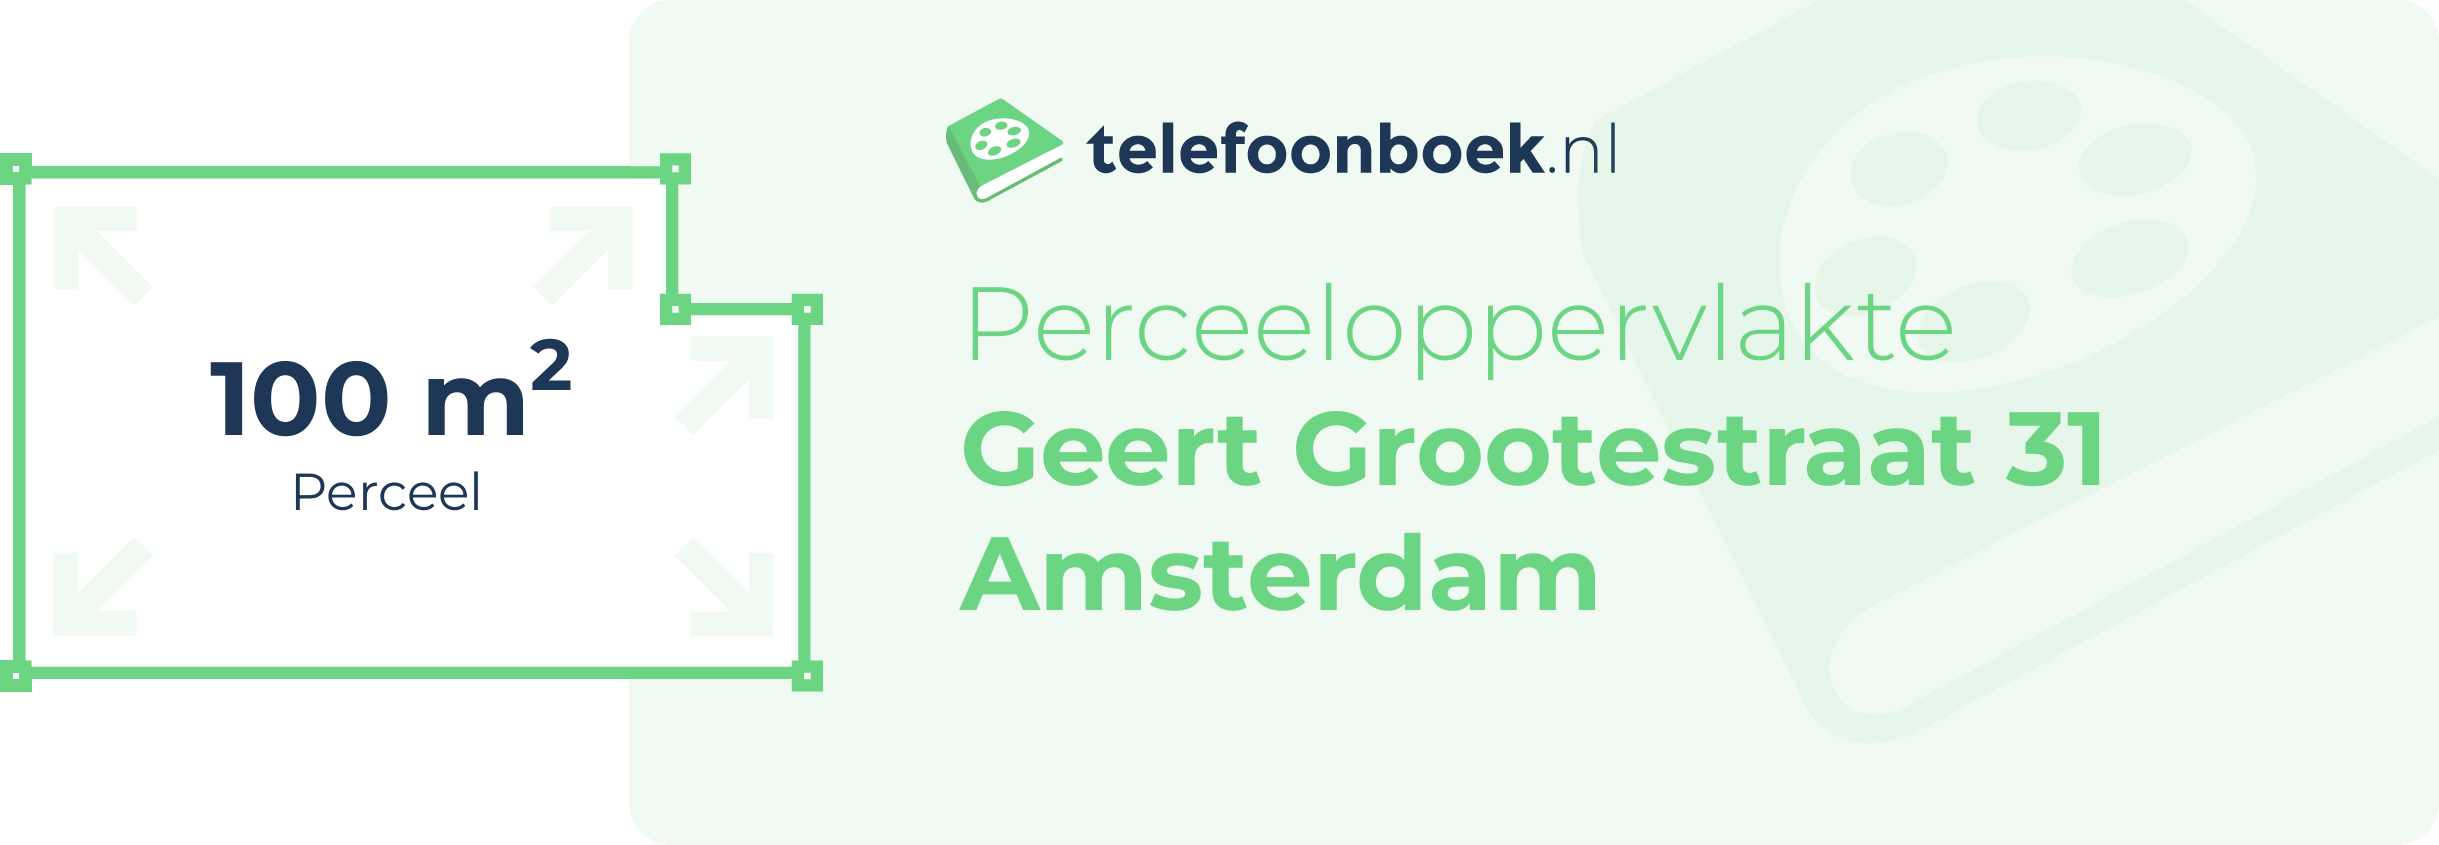 Perceeloppervlakte Geert Grootestraat 31 Amsterdam